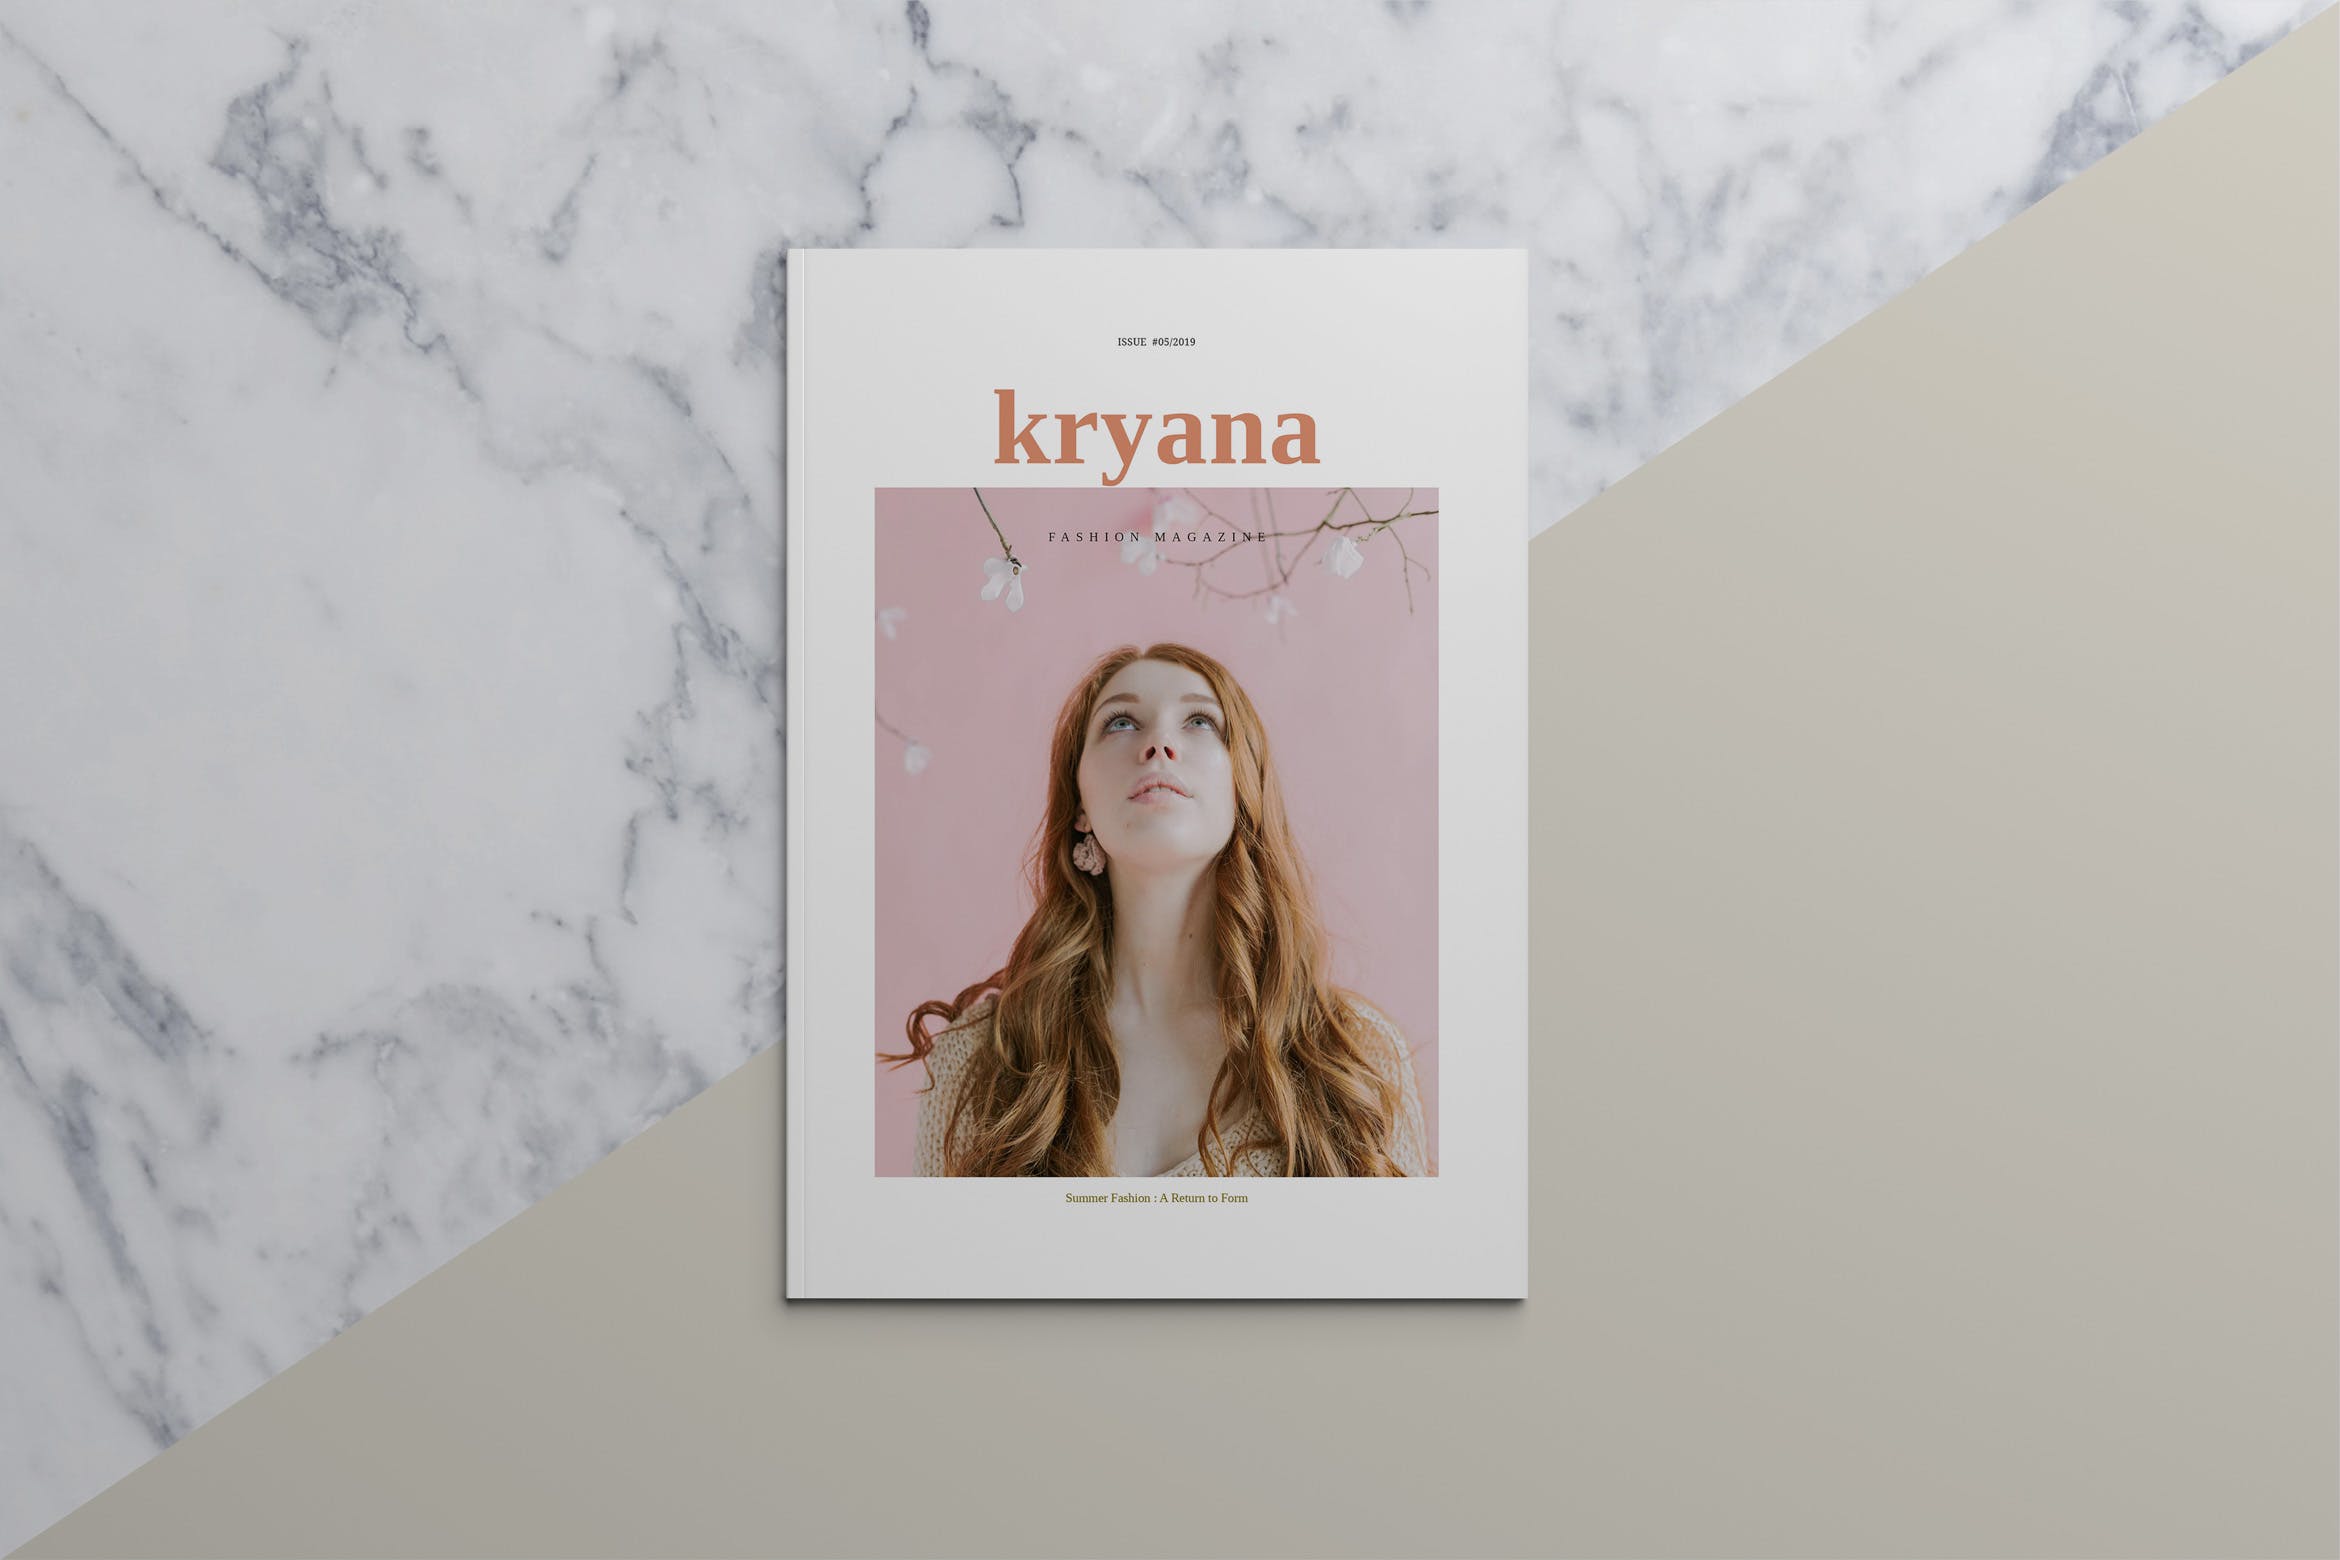 时尚主义北欧风格素材库精选杂志设计模板 KRYANA – Fashion Magazine插图